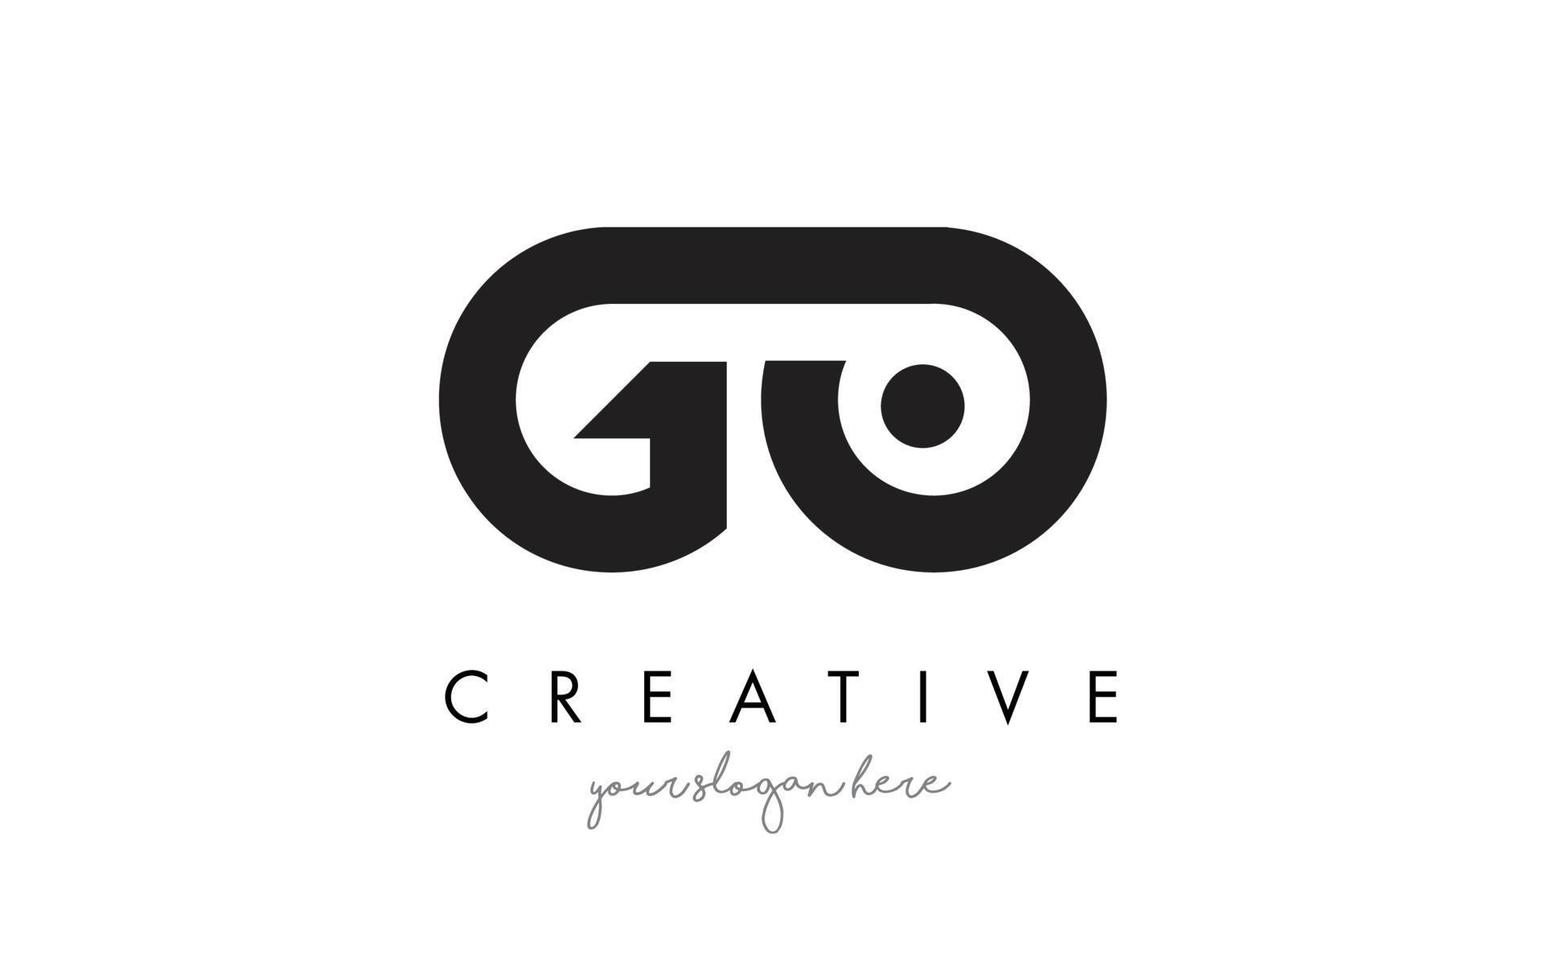 vai al design del logo della lettera con una tipografia moderna e creativa alla moda. vettore